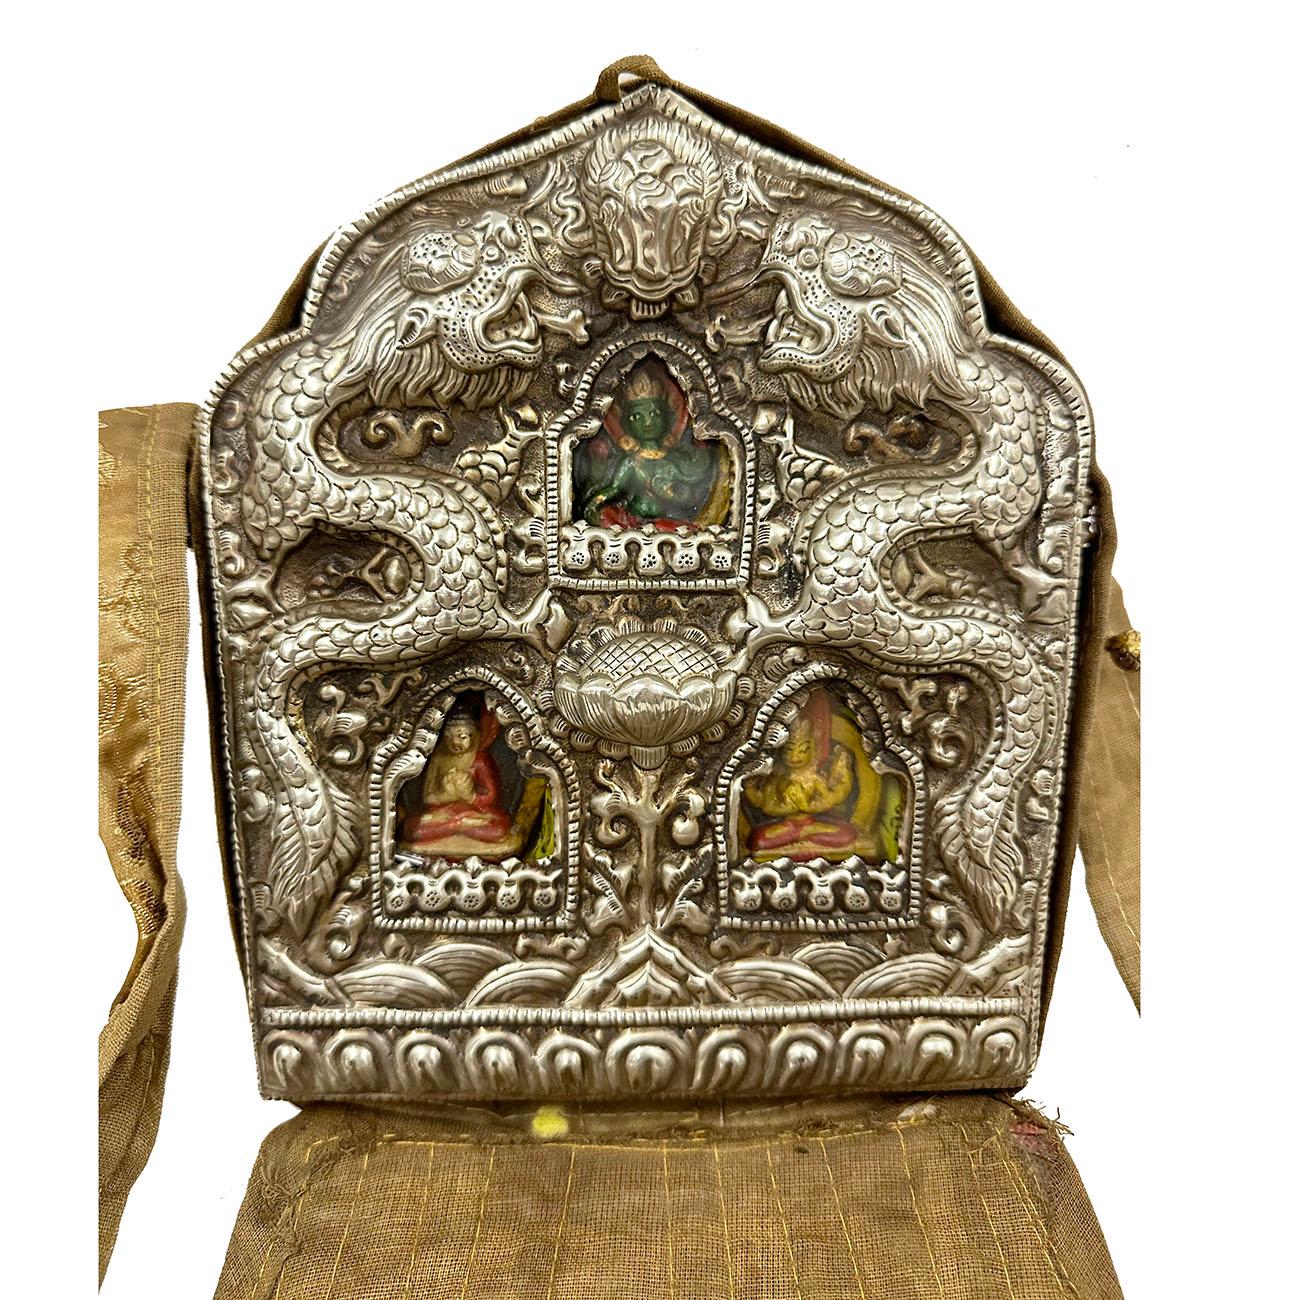 Le ghau est une boîte à prières portée en pendentif par les bouddhistes comme un sanctuaire portatif qui peut être prié lors de leurs déplacements. Cette grande boîte à prières Ghau (sanctuaire de Bouddha de voyage) en argent tibétain est ornée de